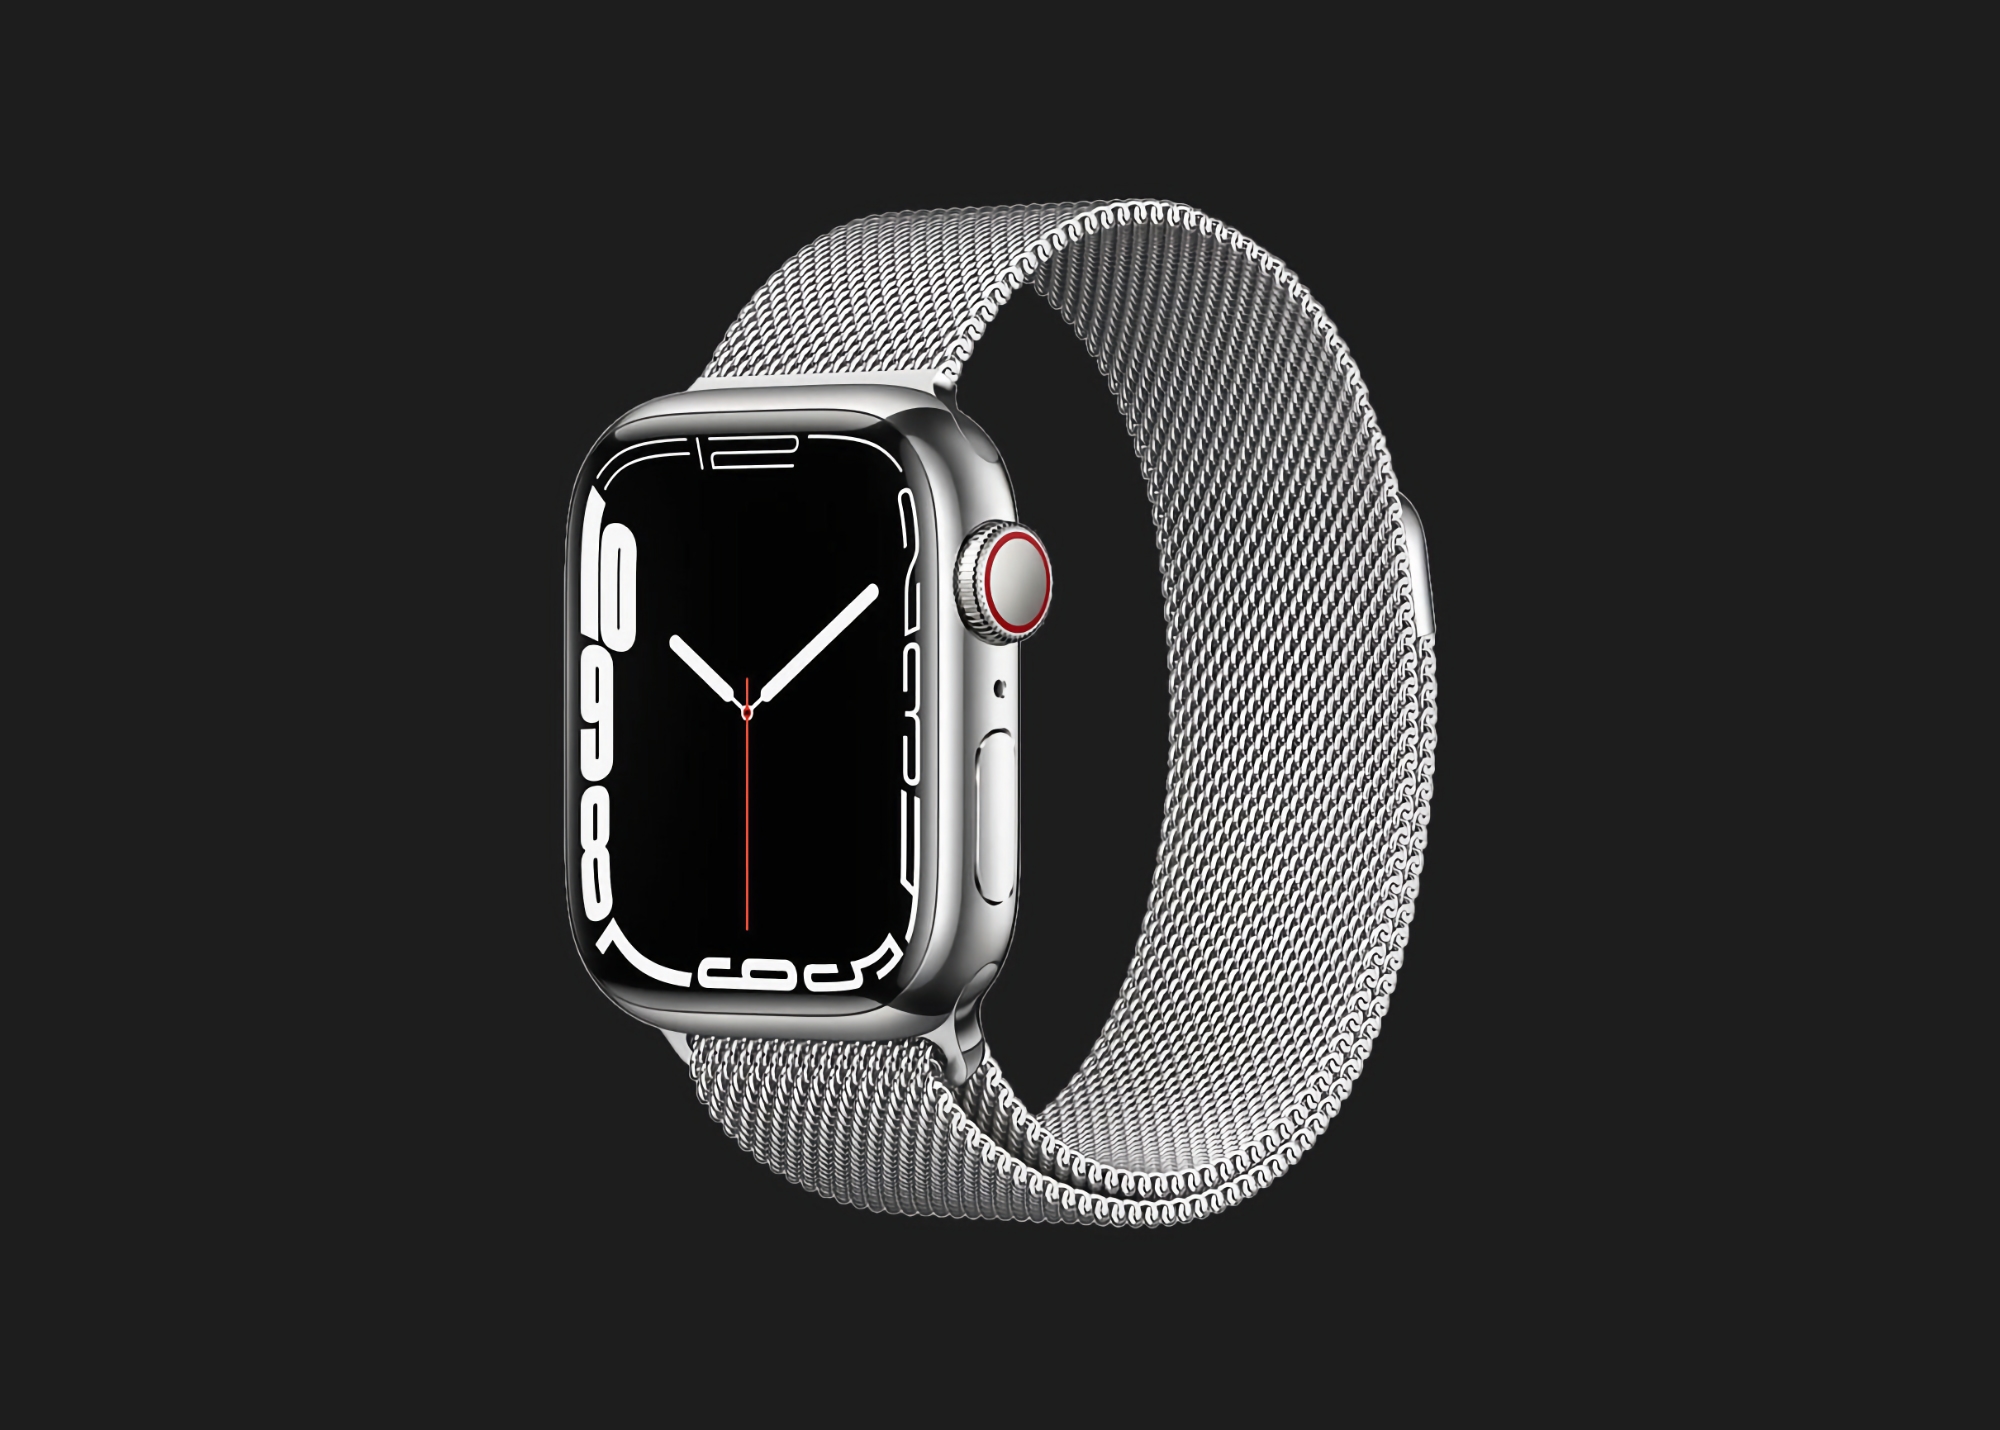 Oferta ograniczona czasowo: Apple Watch Series 7 z obsługą urządzeń mobilnych i kopertą ze stali nierdzewnej dostępny na Amazon ze zniżką 78 USD